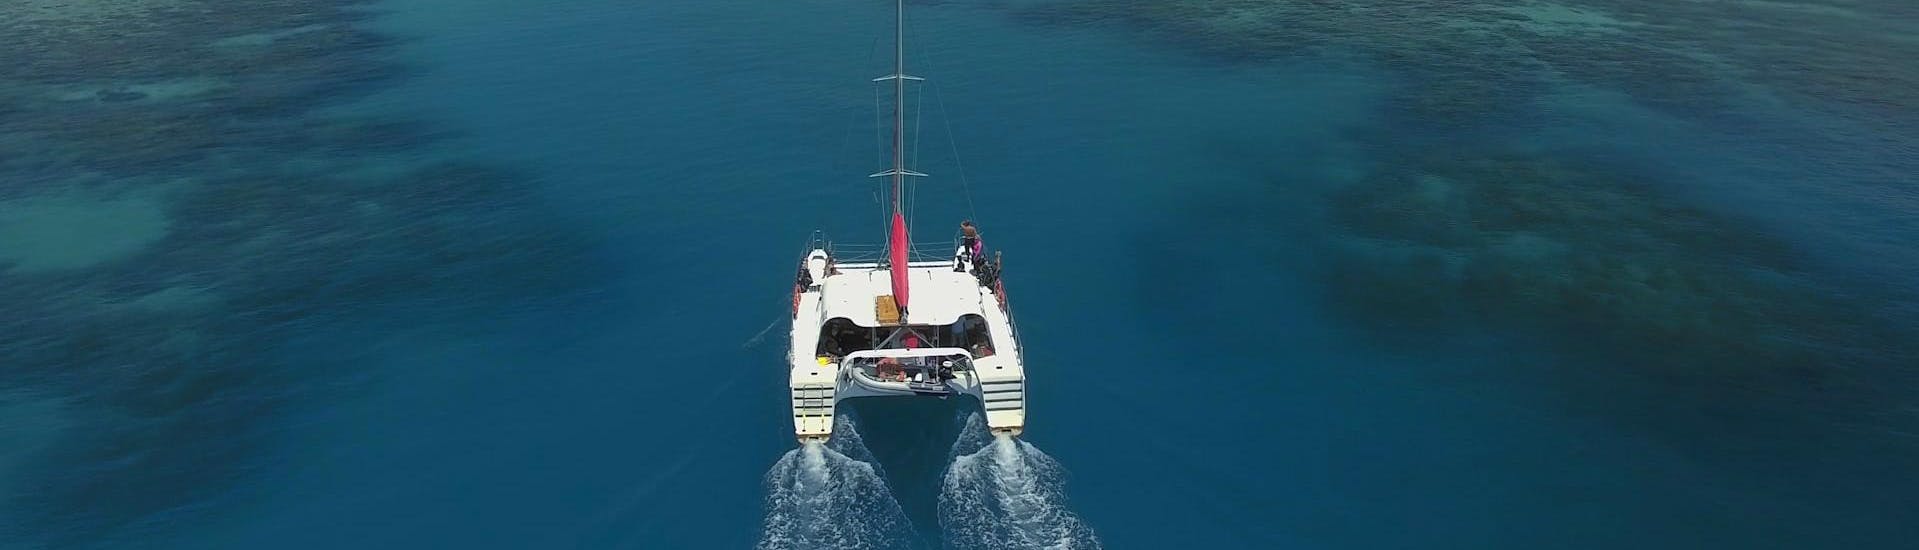 Begeleide Scuba Duiktochten in Cairns voor gecertificeerde duikers.